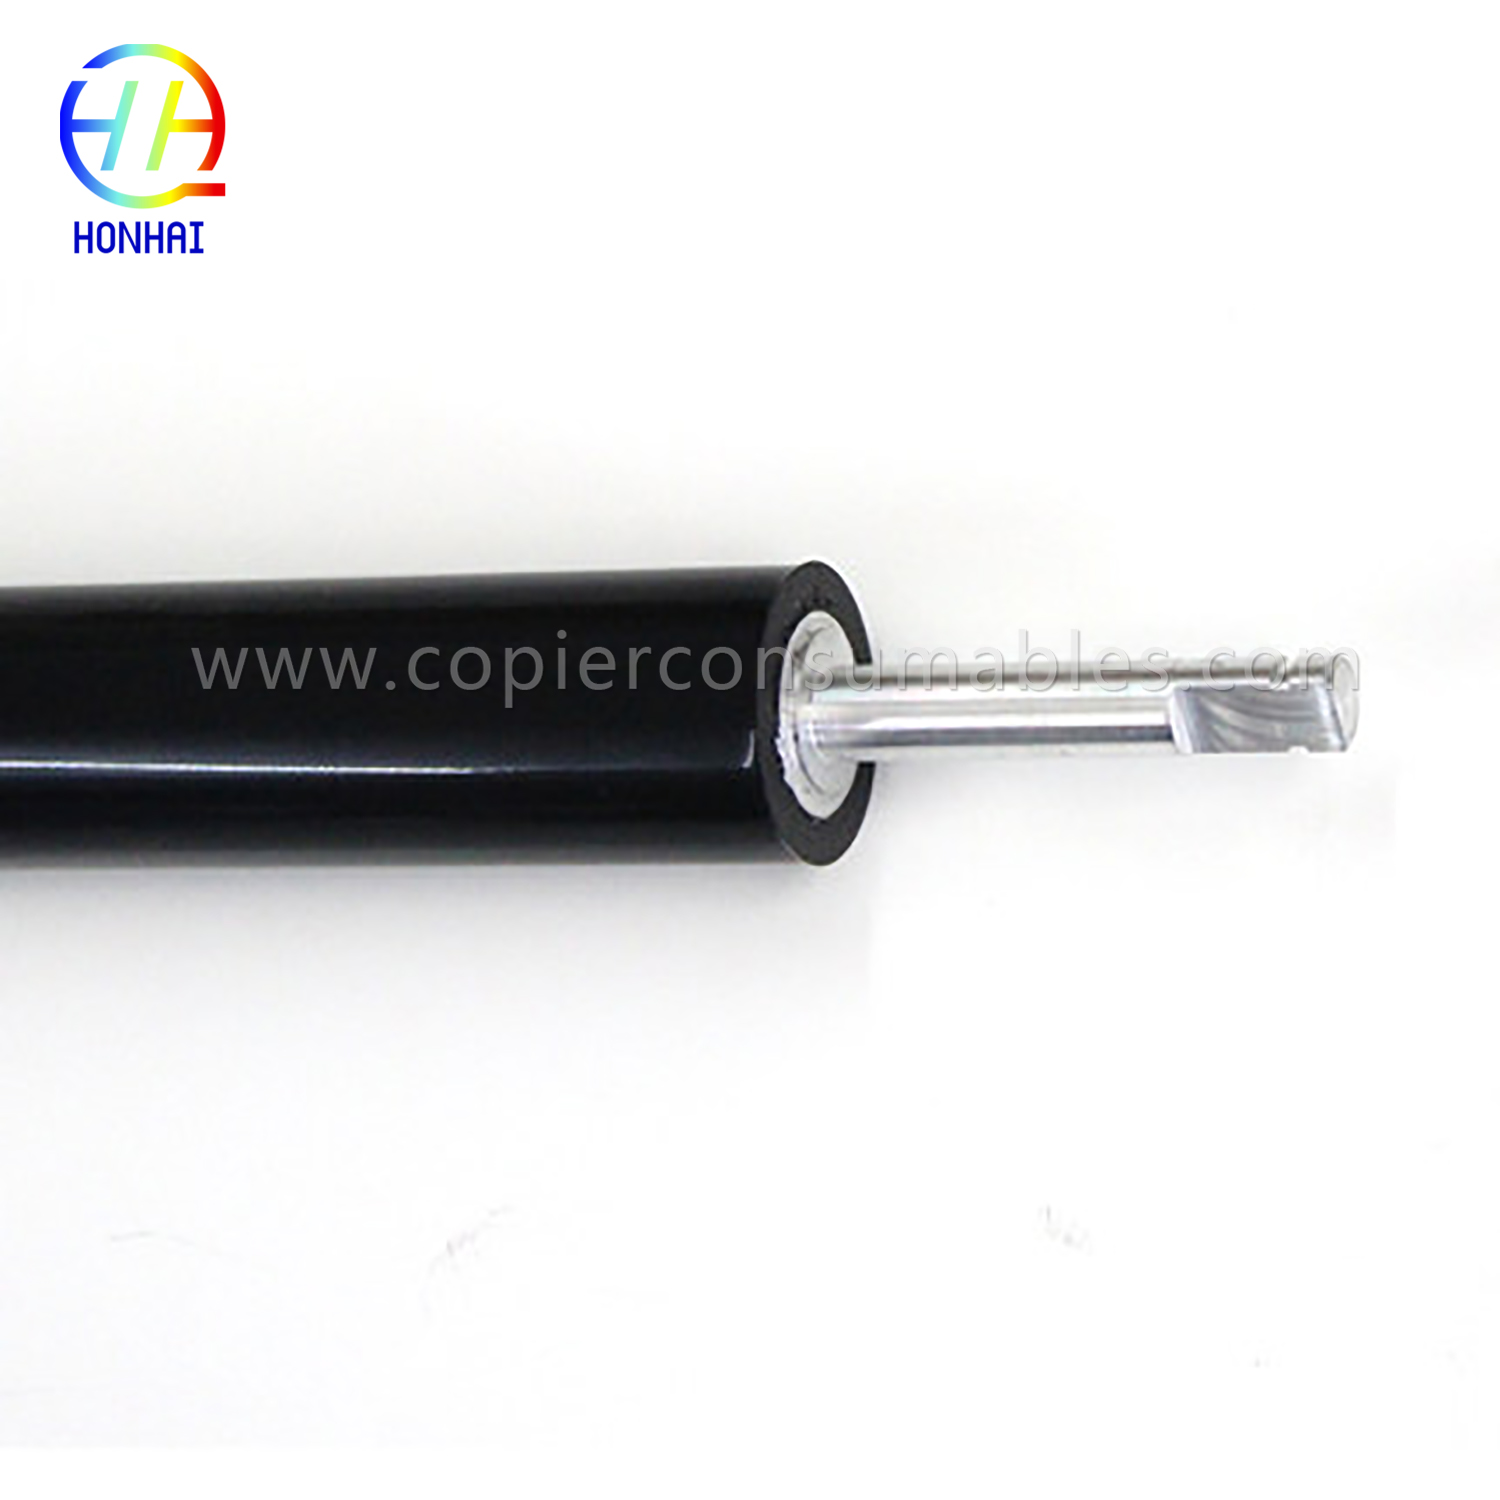 أسطوانة الضغط المنخفض لـ HP Color LaserJet 4700 4730 CM4730 CP4005 (LPR-4700) (3) 拷贝